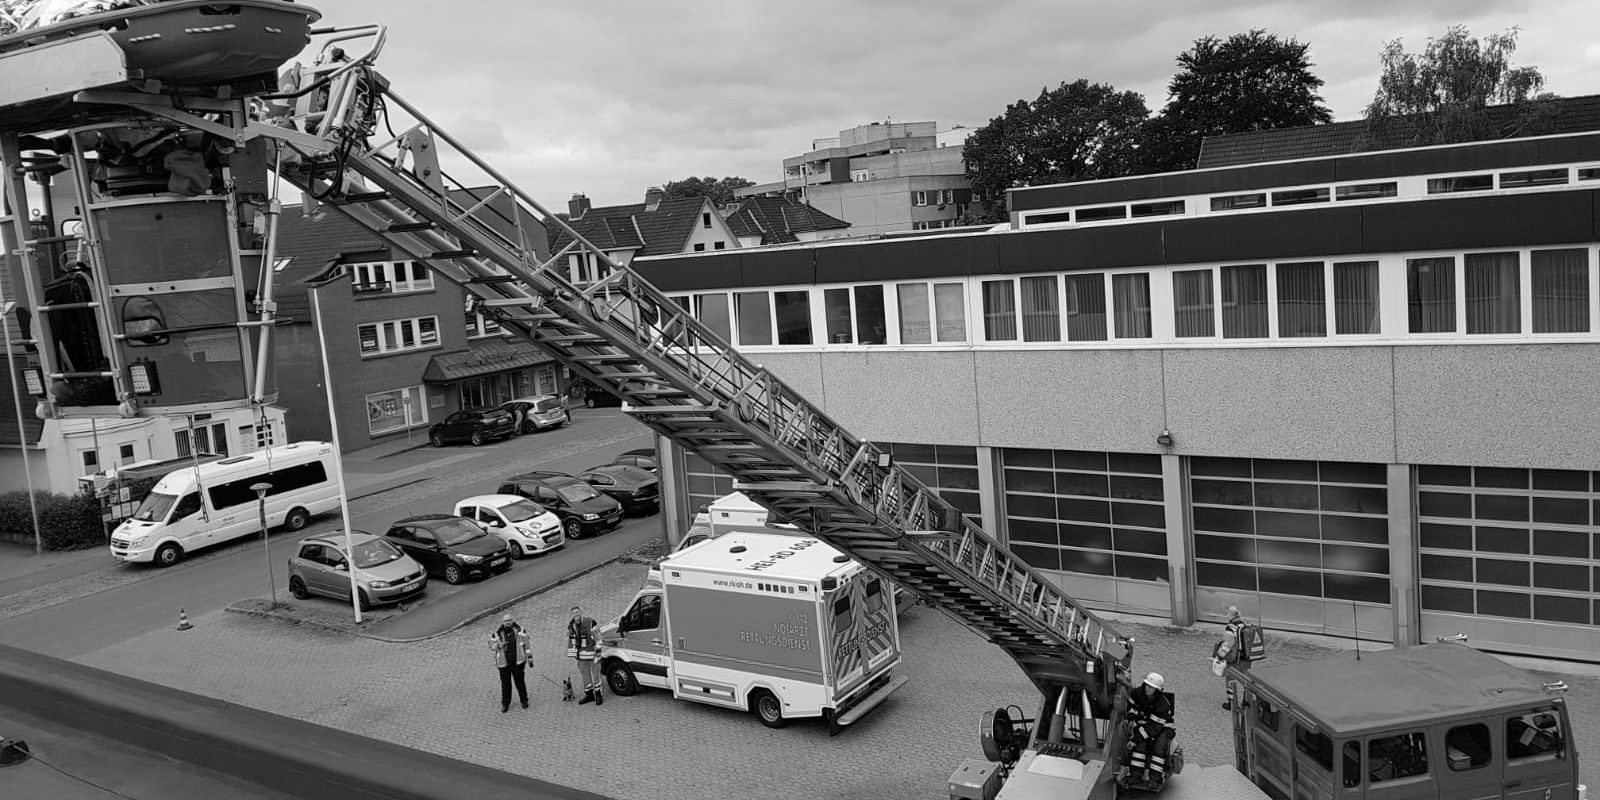 Historie – Feuerwehr Raisdorf